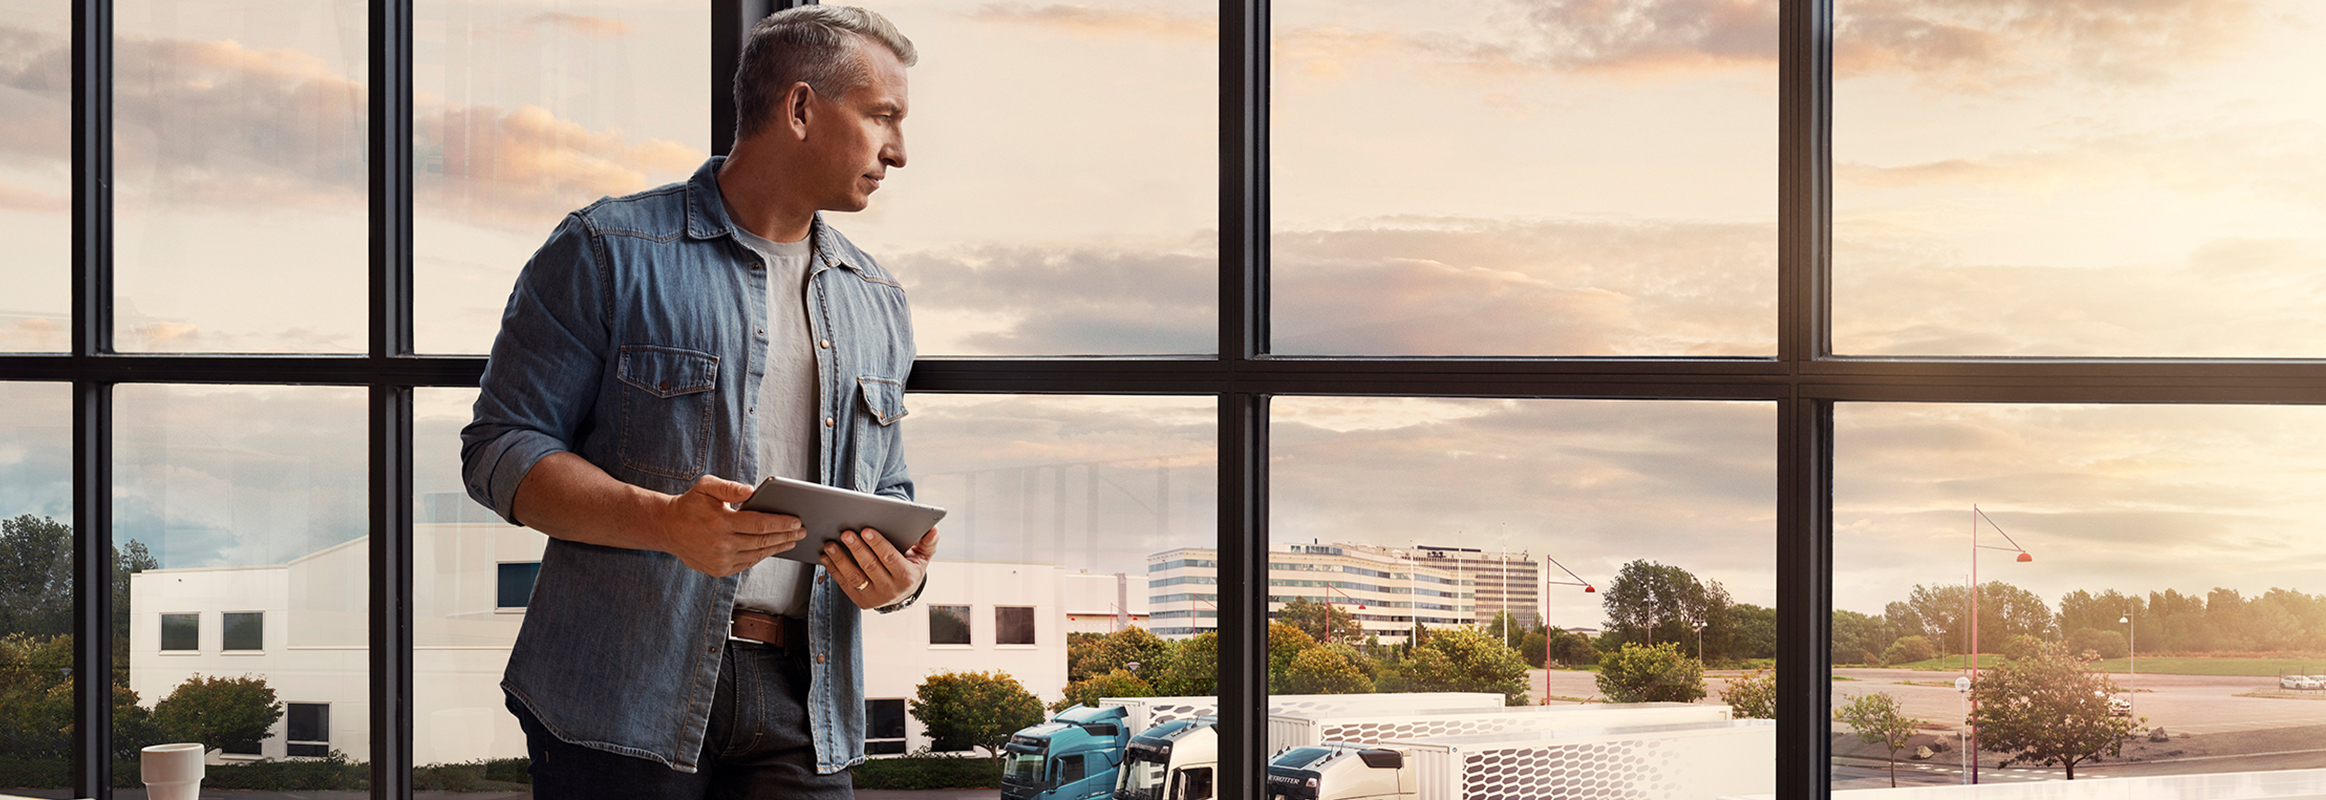 Muž držiaci tablet stojí pri okne a pozerá sa dole na svoj park nákladných vozidiel